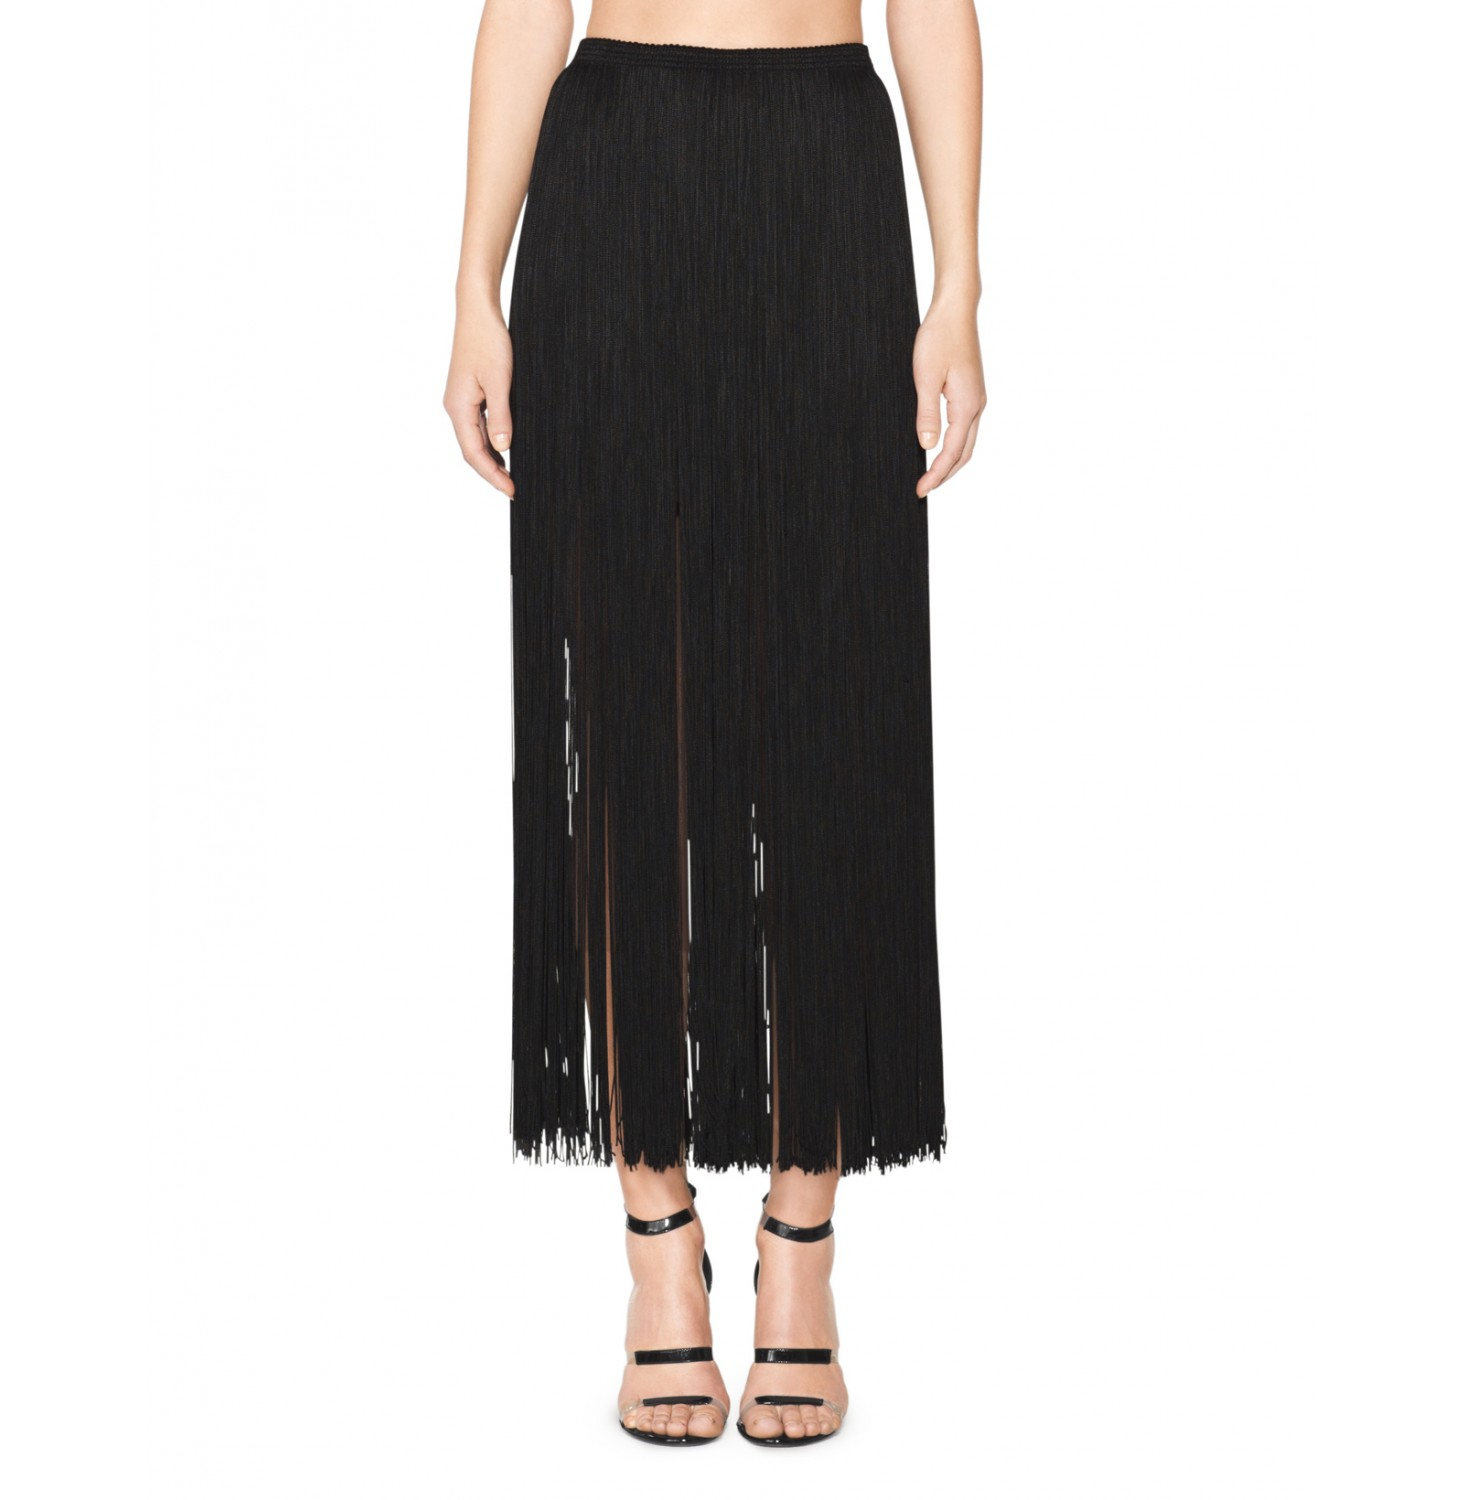 Tamara Mellon Long Fringed Skirt in Black | Lyst